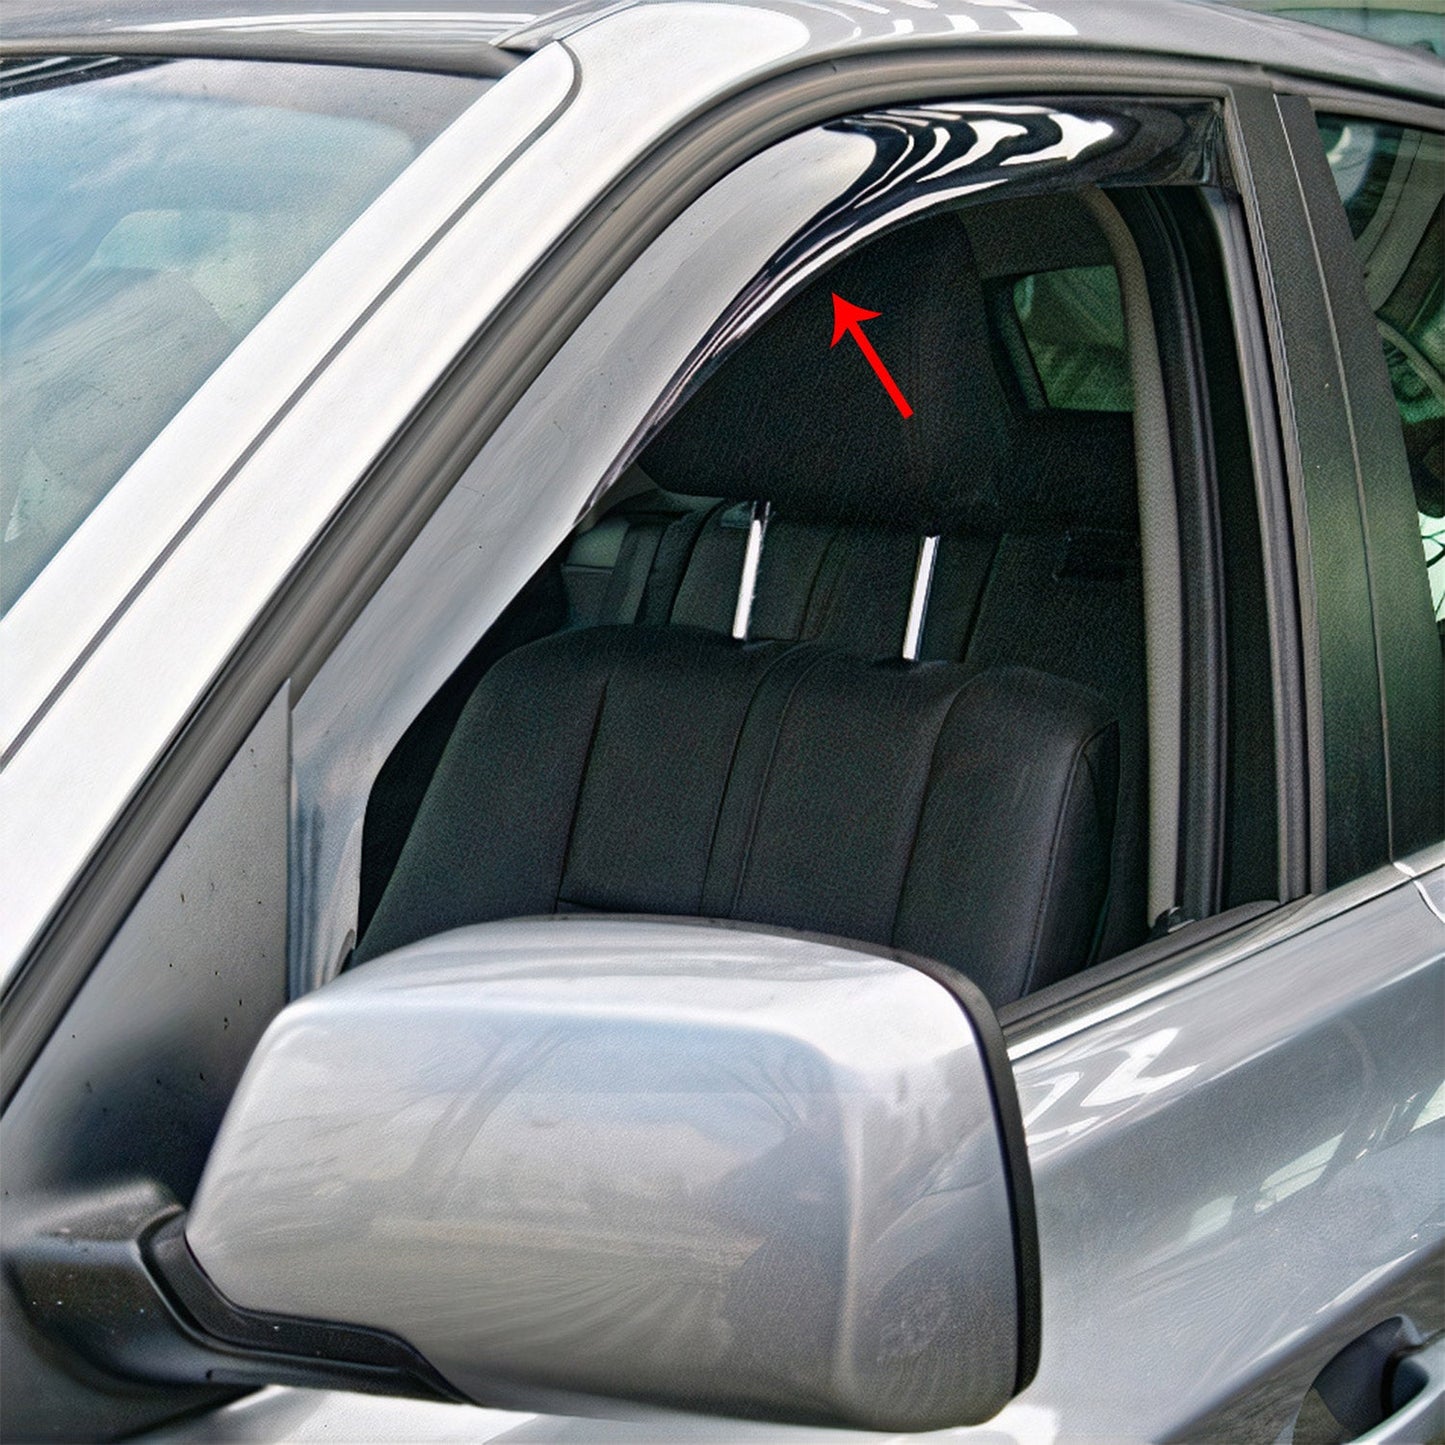 OMAC For 2004-2010 BMW X3 E83 Window Visor Wind Deflector Sun Shade Rain Guard 2 Pcs 1207FR14.147M